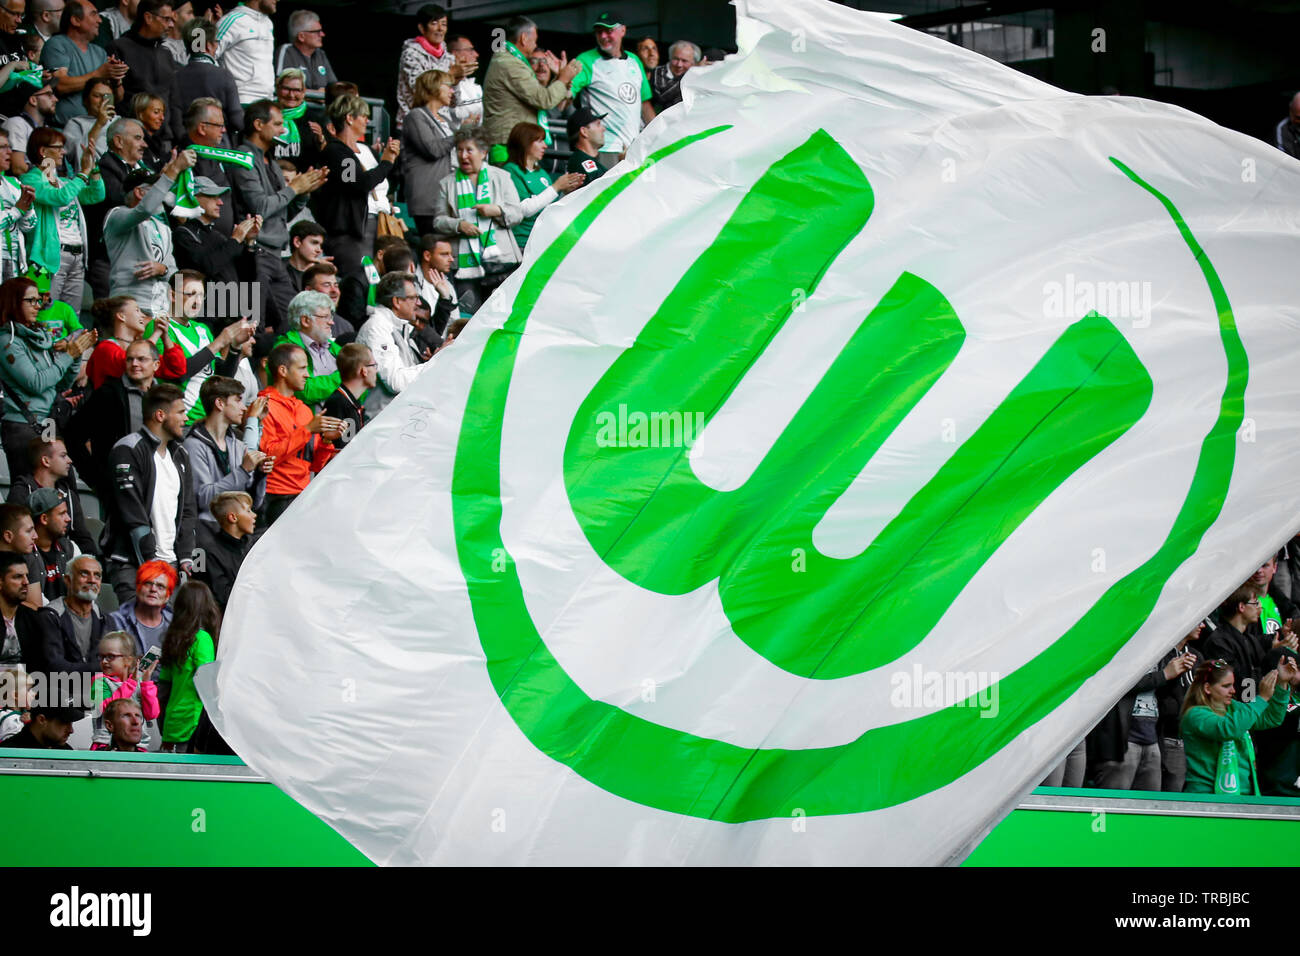 Wolfsburg, Germany, August 11, 2018: flag around the VfL Wolfsburg fans at Volkswagen Arena in Wolfsburg. Photo by Michele Morrone. Stock Photo